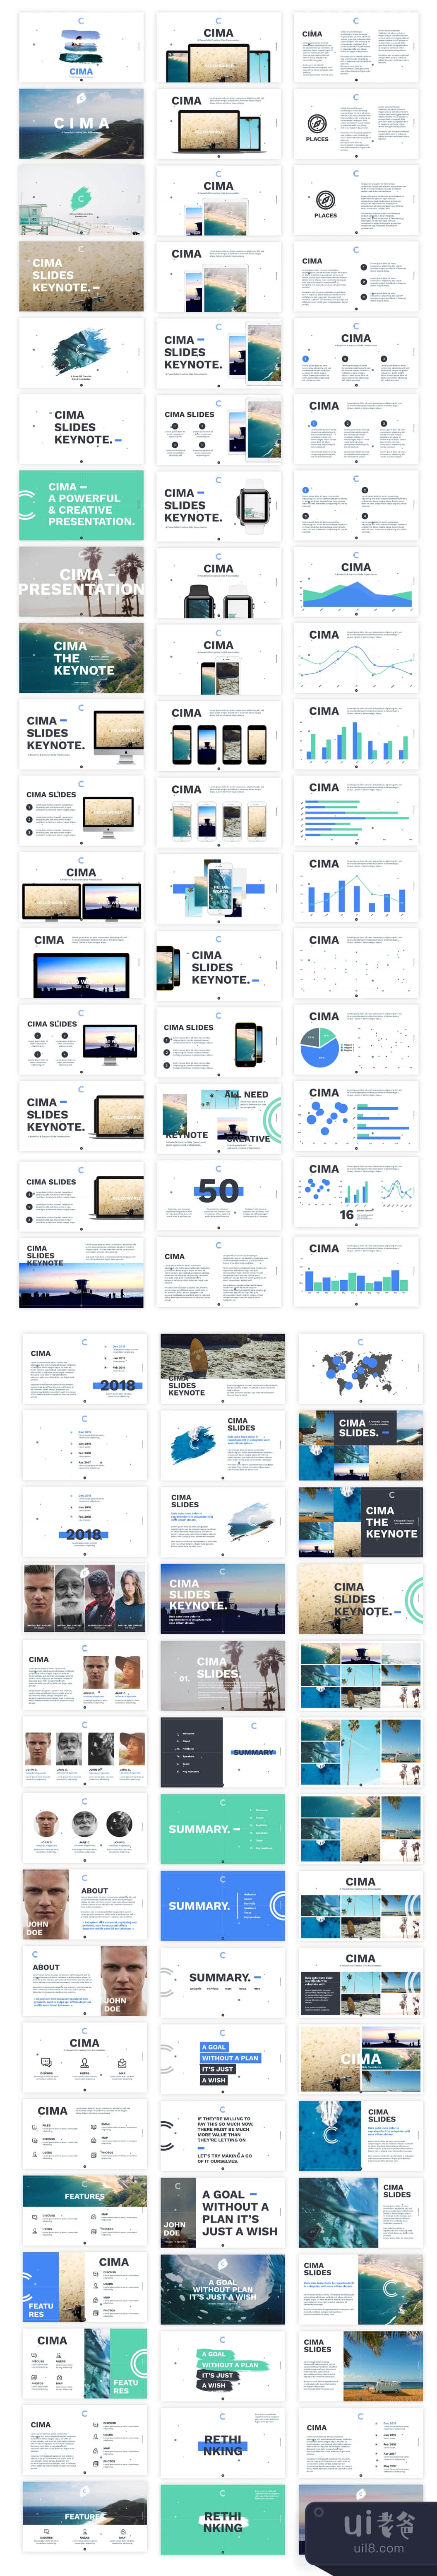 Cima Slides Presentation (Cima Slides Presentation插图